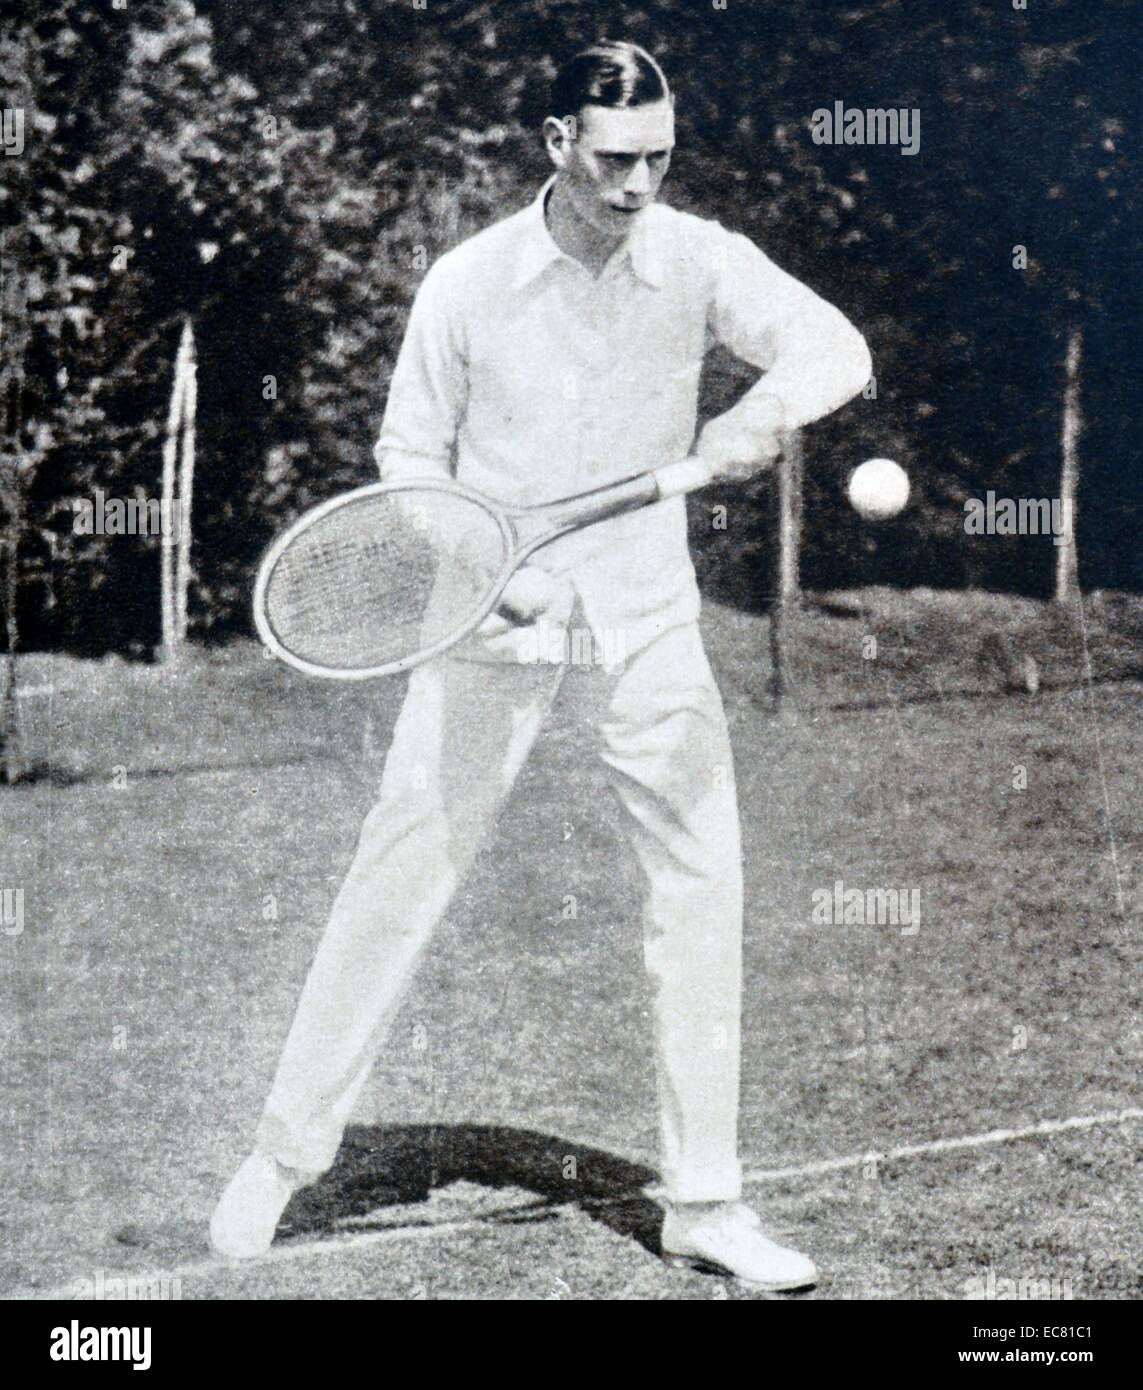 Signore Birkenhead ha organizzato un party di tennis presso la sua casa di campagna, Charlton vicino a Banbury. Il Duca di York (più tardi re George VI) è mostrato giocando a tennis dopo agli spettatori diversi giochi. Foto Stock